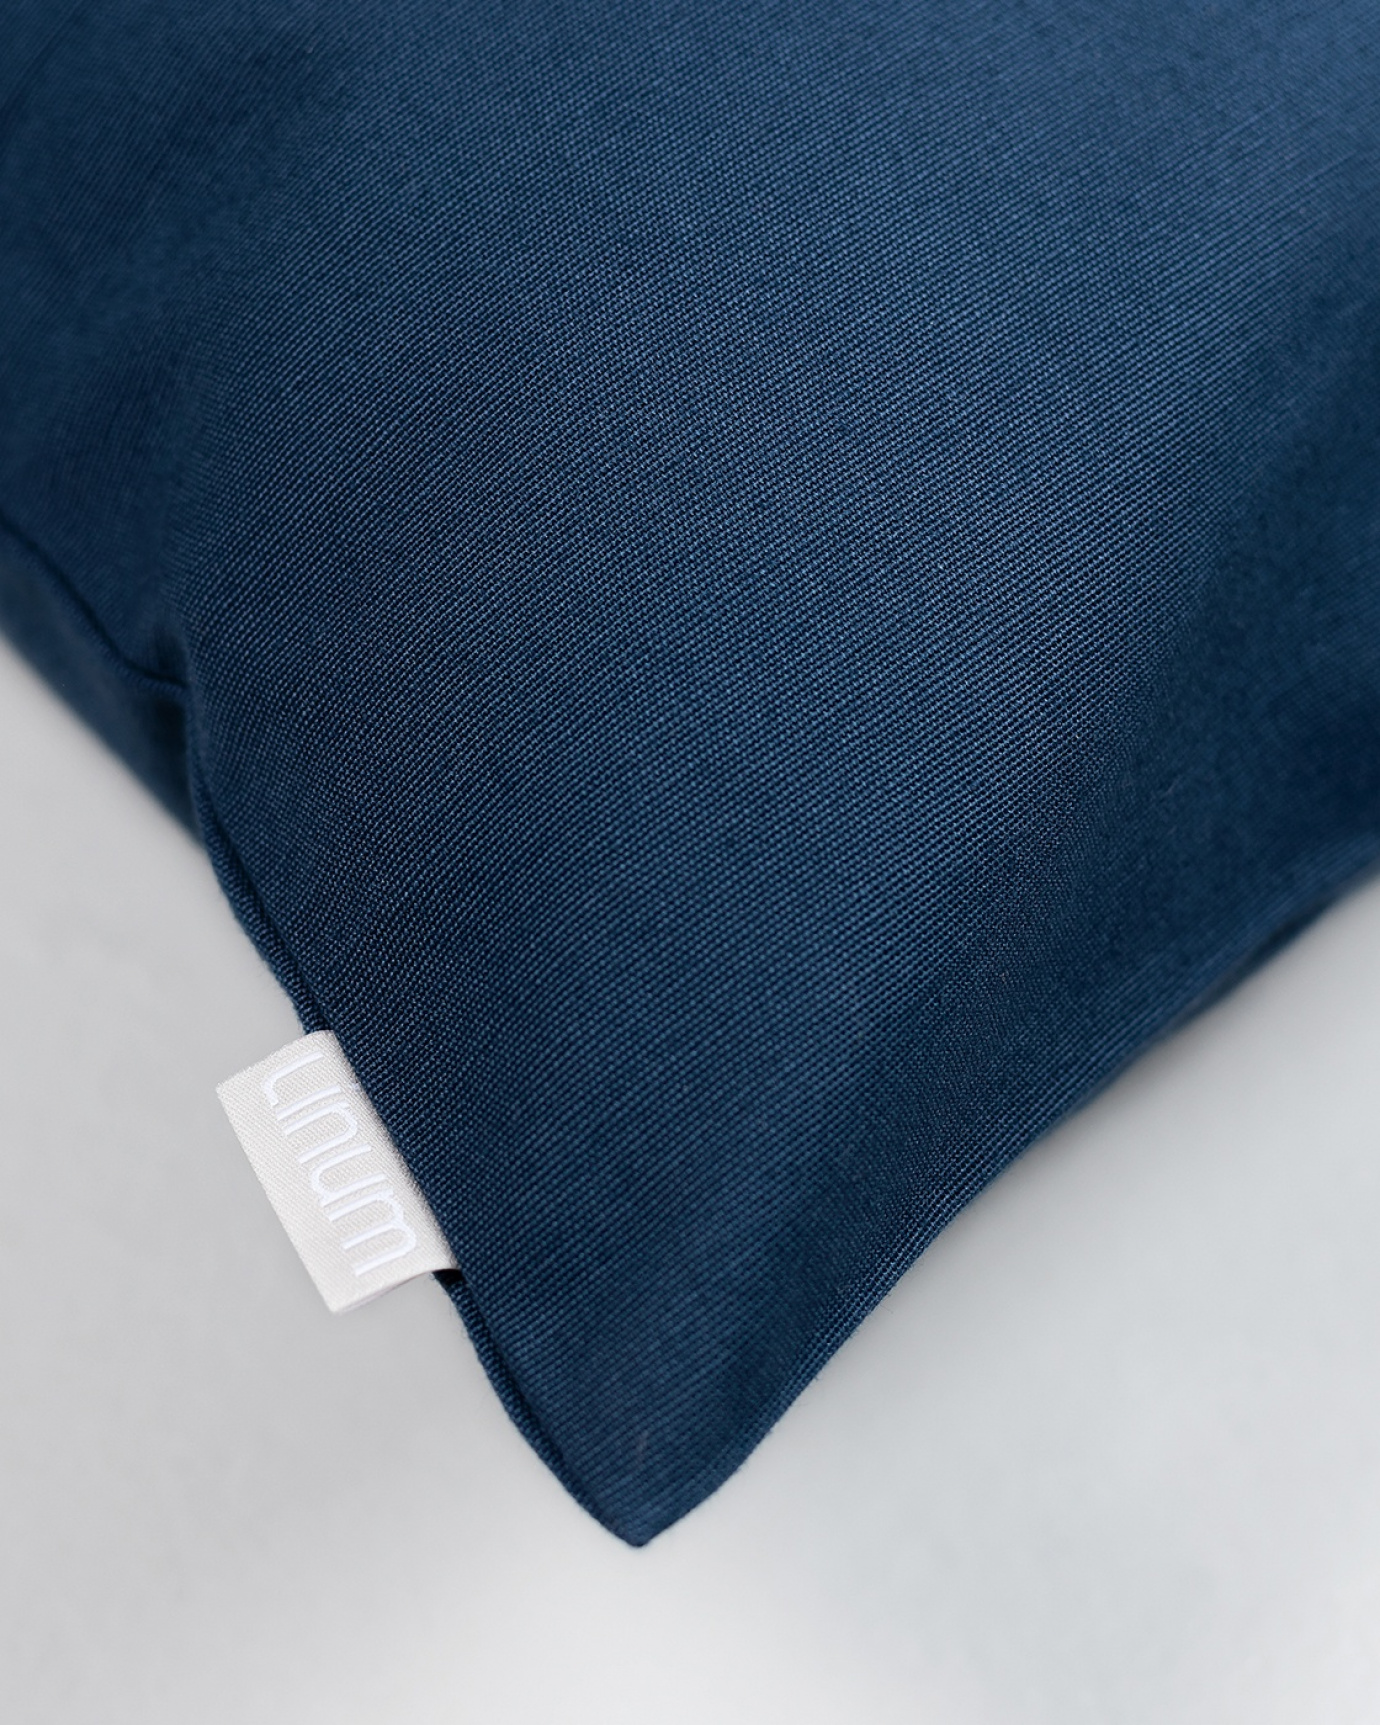 ANNABELL Cushion cover 50x50 cm Indigo blue, bild 2 